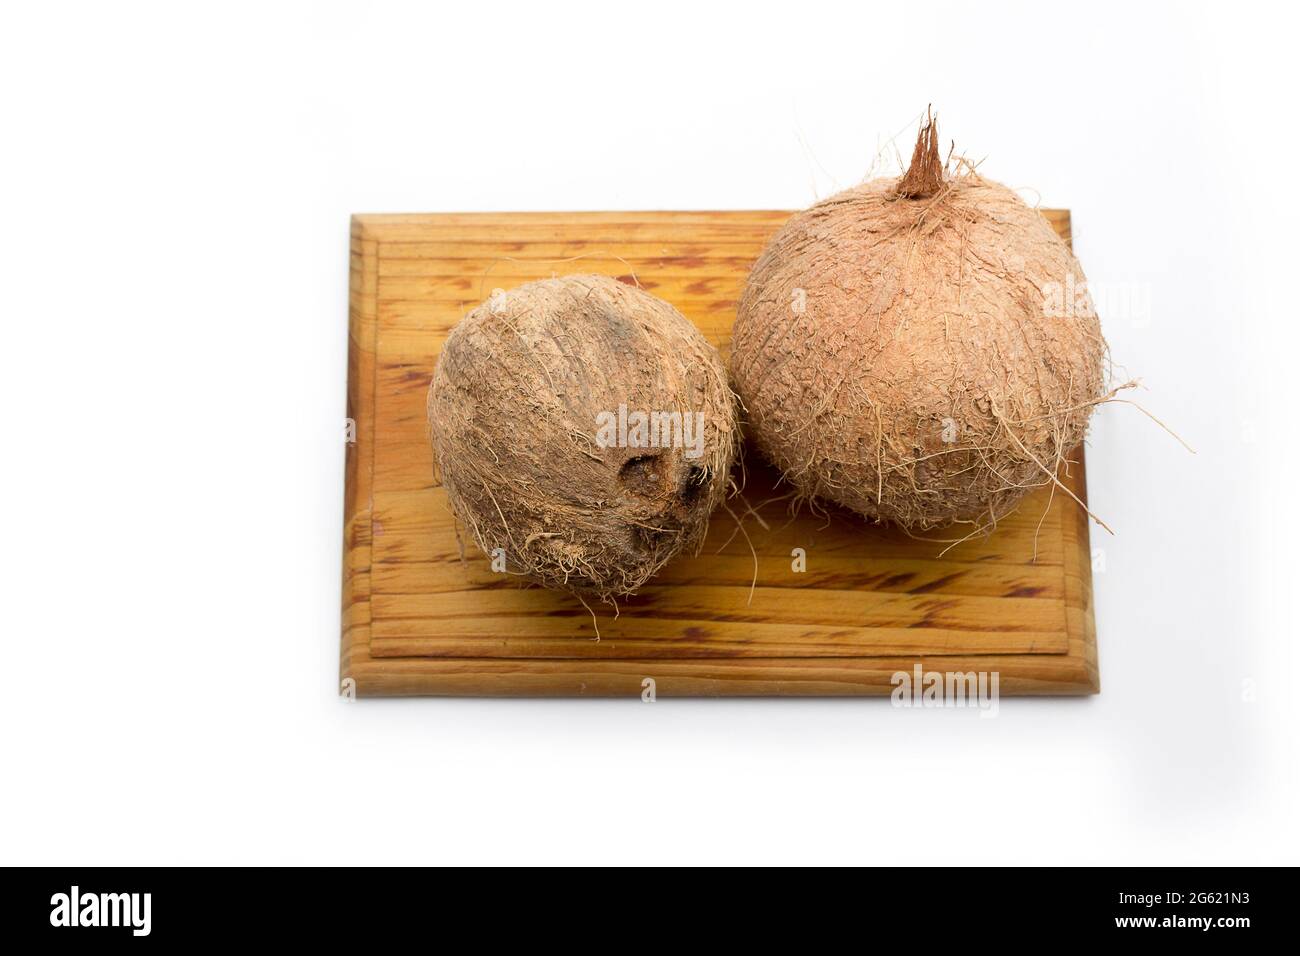 Noci di cocco intere su una tavola di legno su sfondo bianco. Frutta tropicale delle coste caraibiche Foto Stock